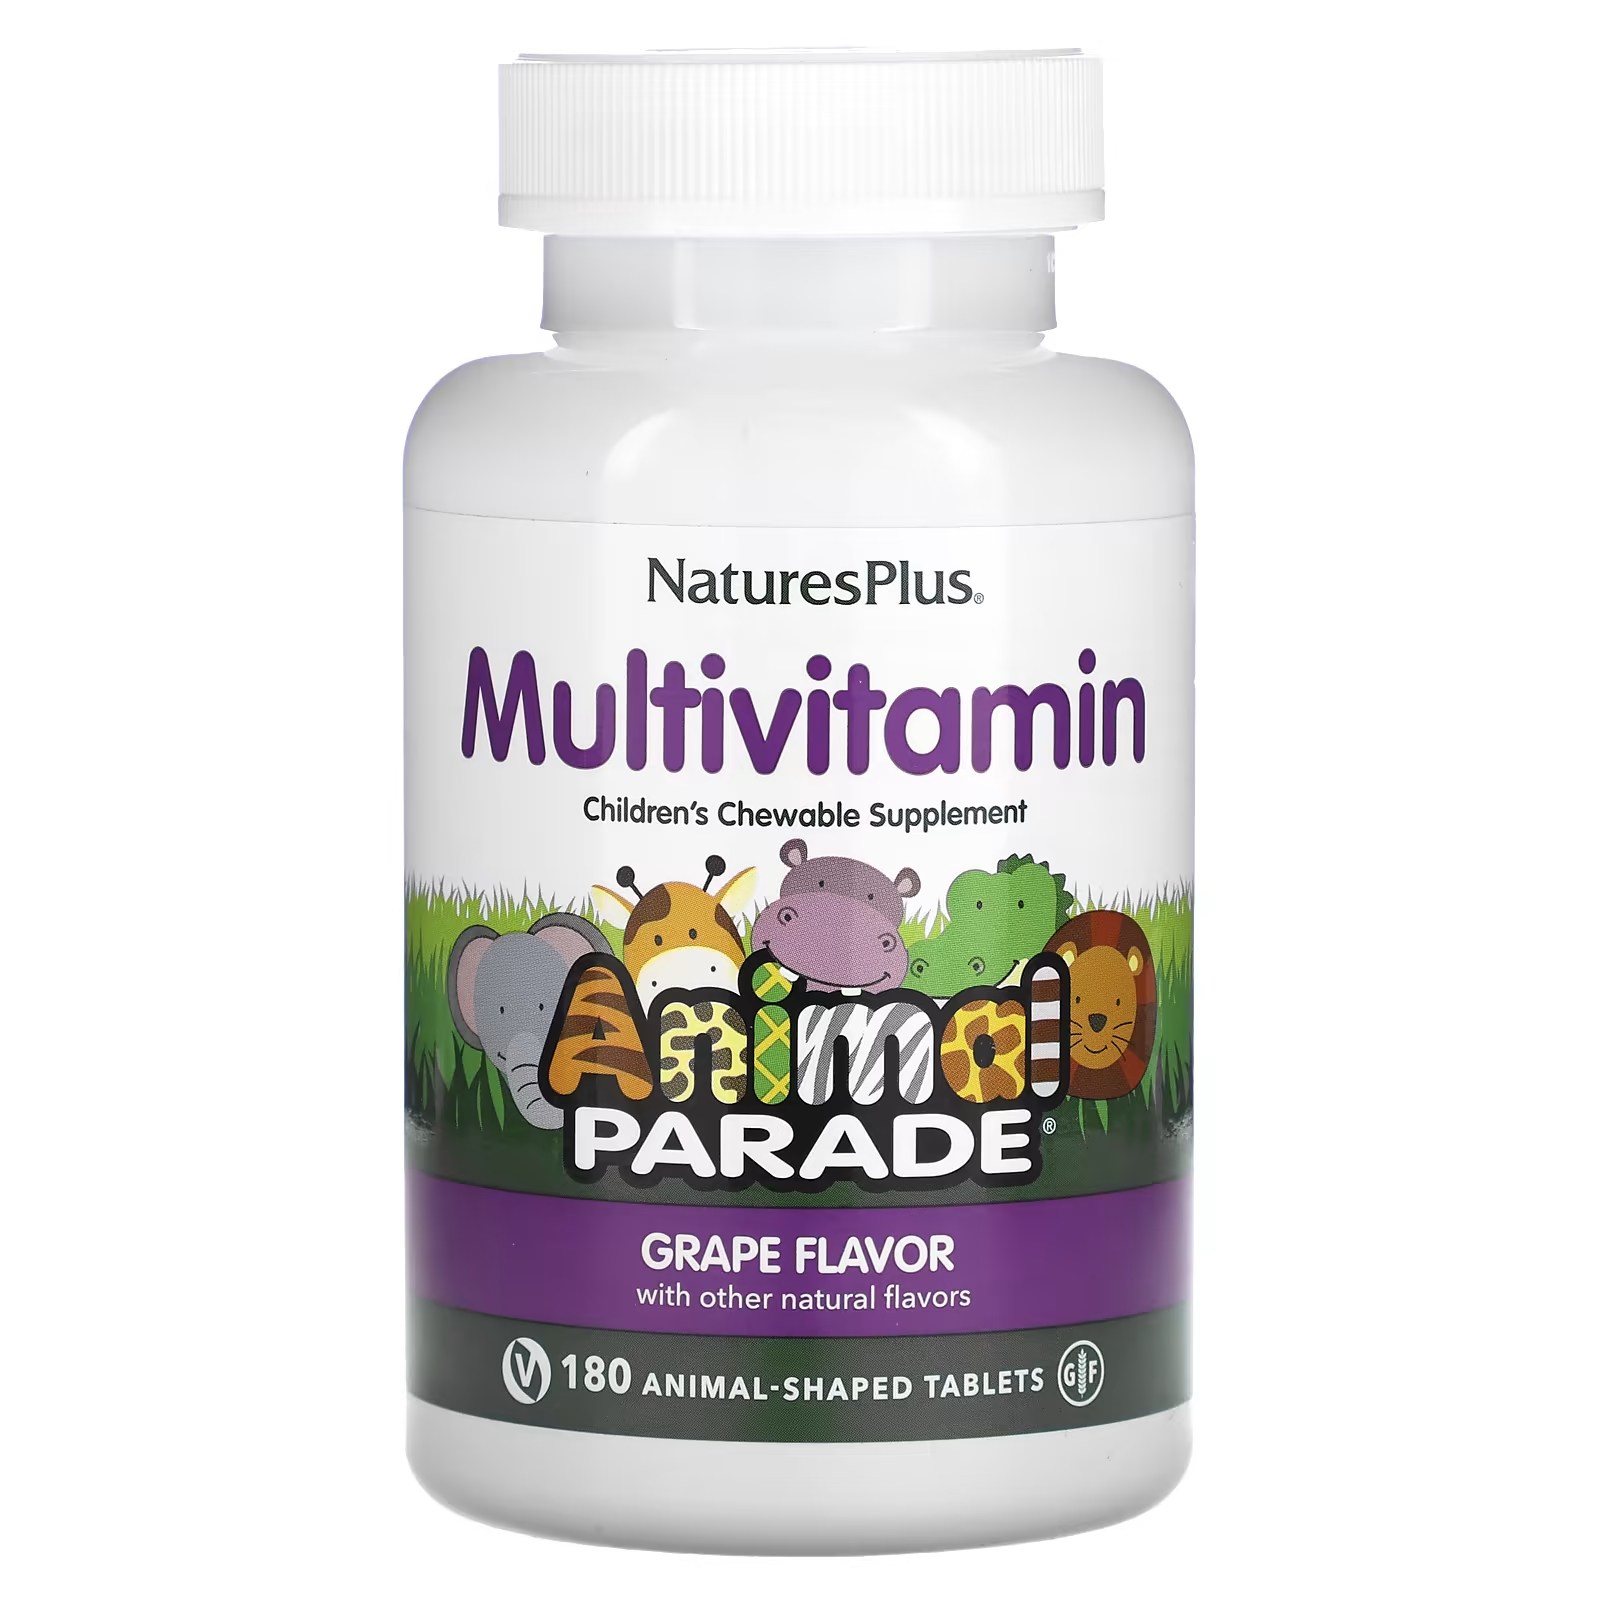 Мультивитаминная добавка NaturesPlus Animal Parade со вкусом винограда, 180 таблеток в форме животных витамины антиоксиданты минералы awochactive мультивитамины